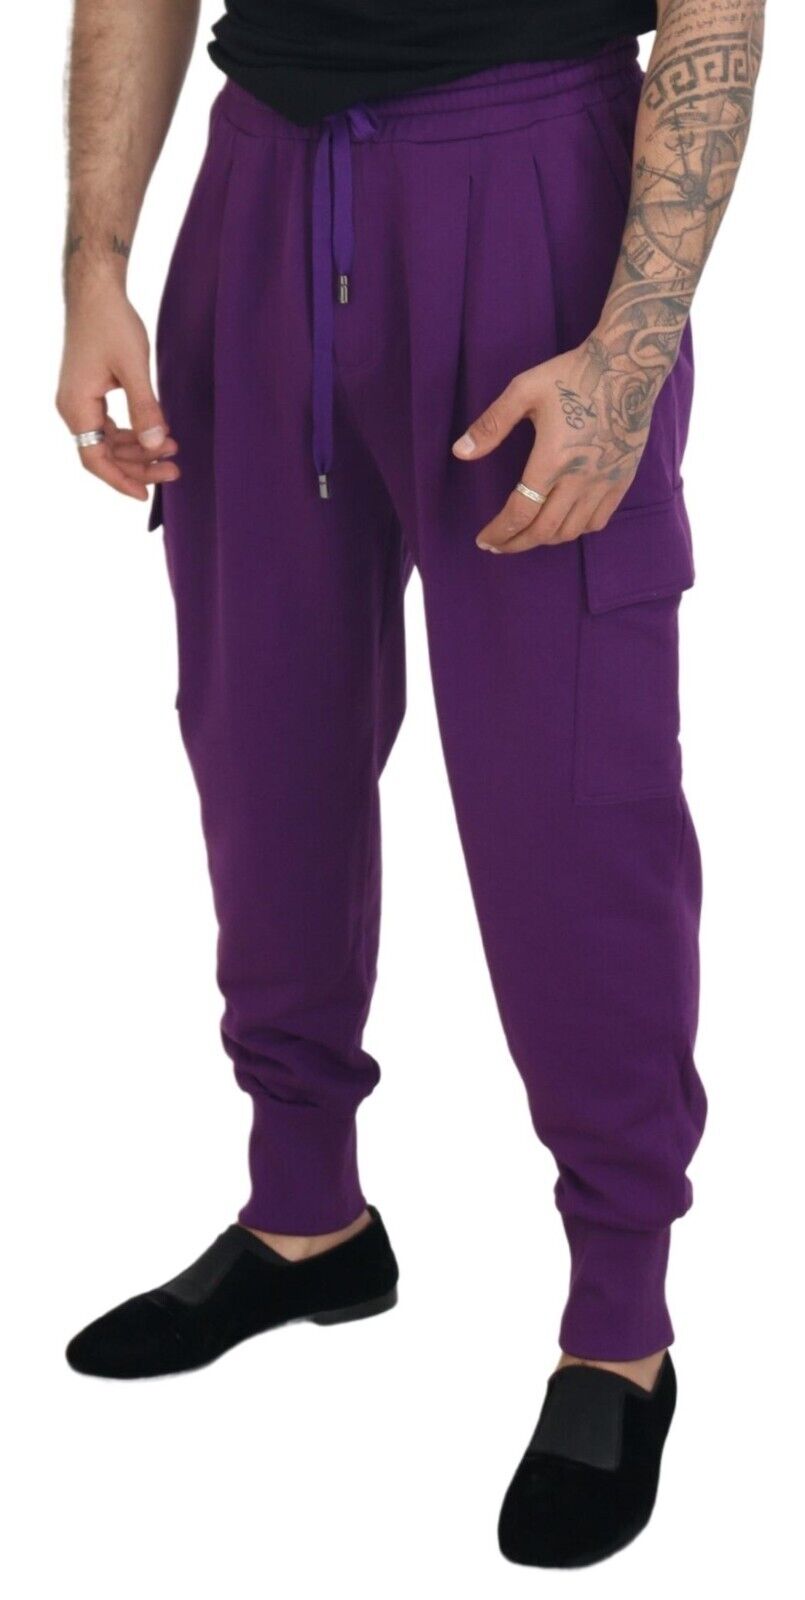 Dolce & Gabbana Purple Cotton Cargo Sweatpants Jogging Pants